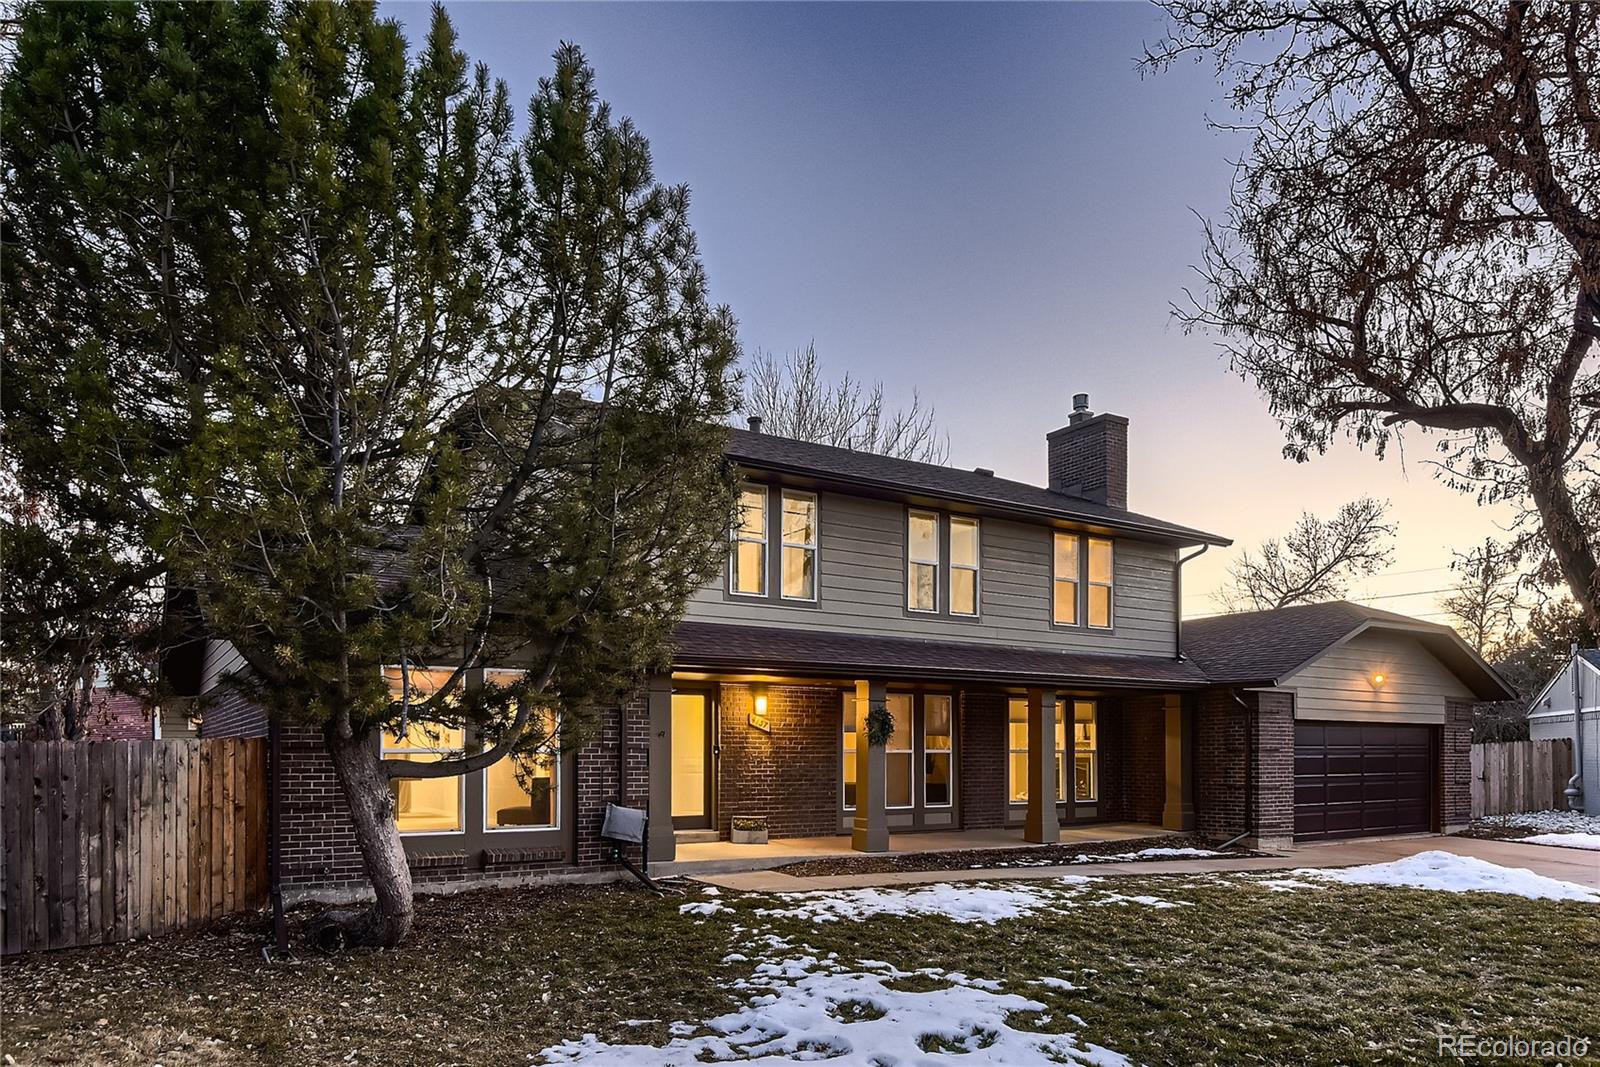 4137 s quebec street, Denver sold home. Closed on 2024-04-02 for $840,000.